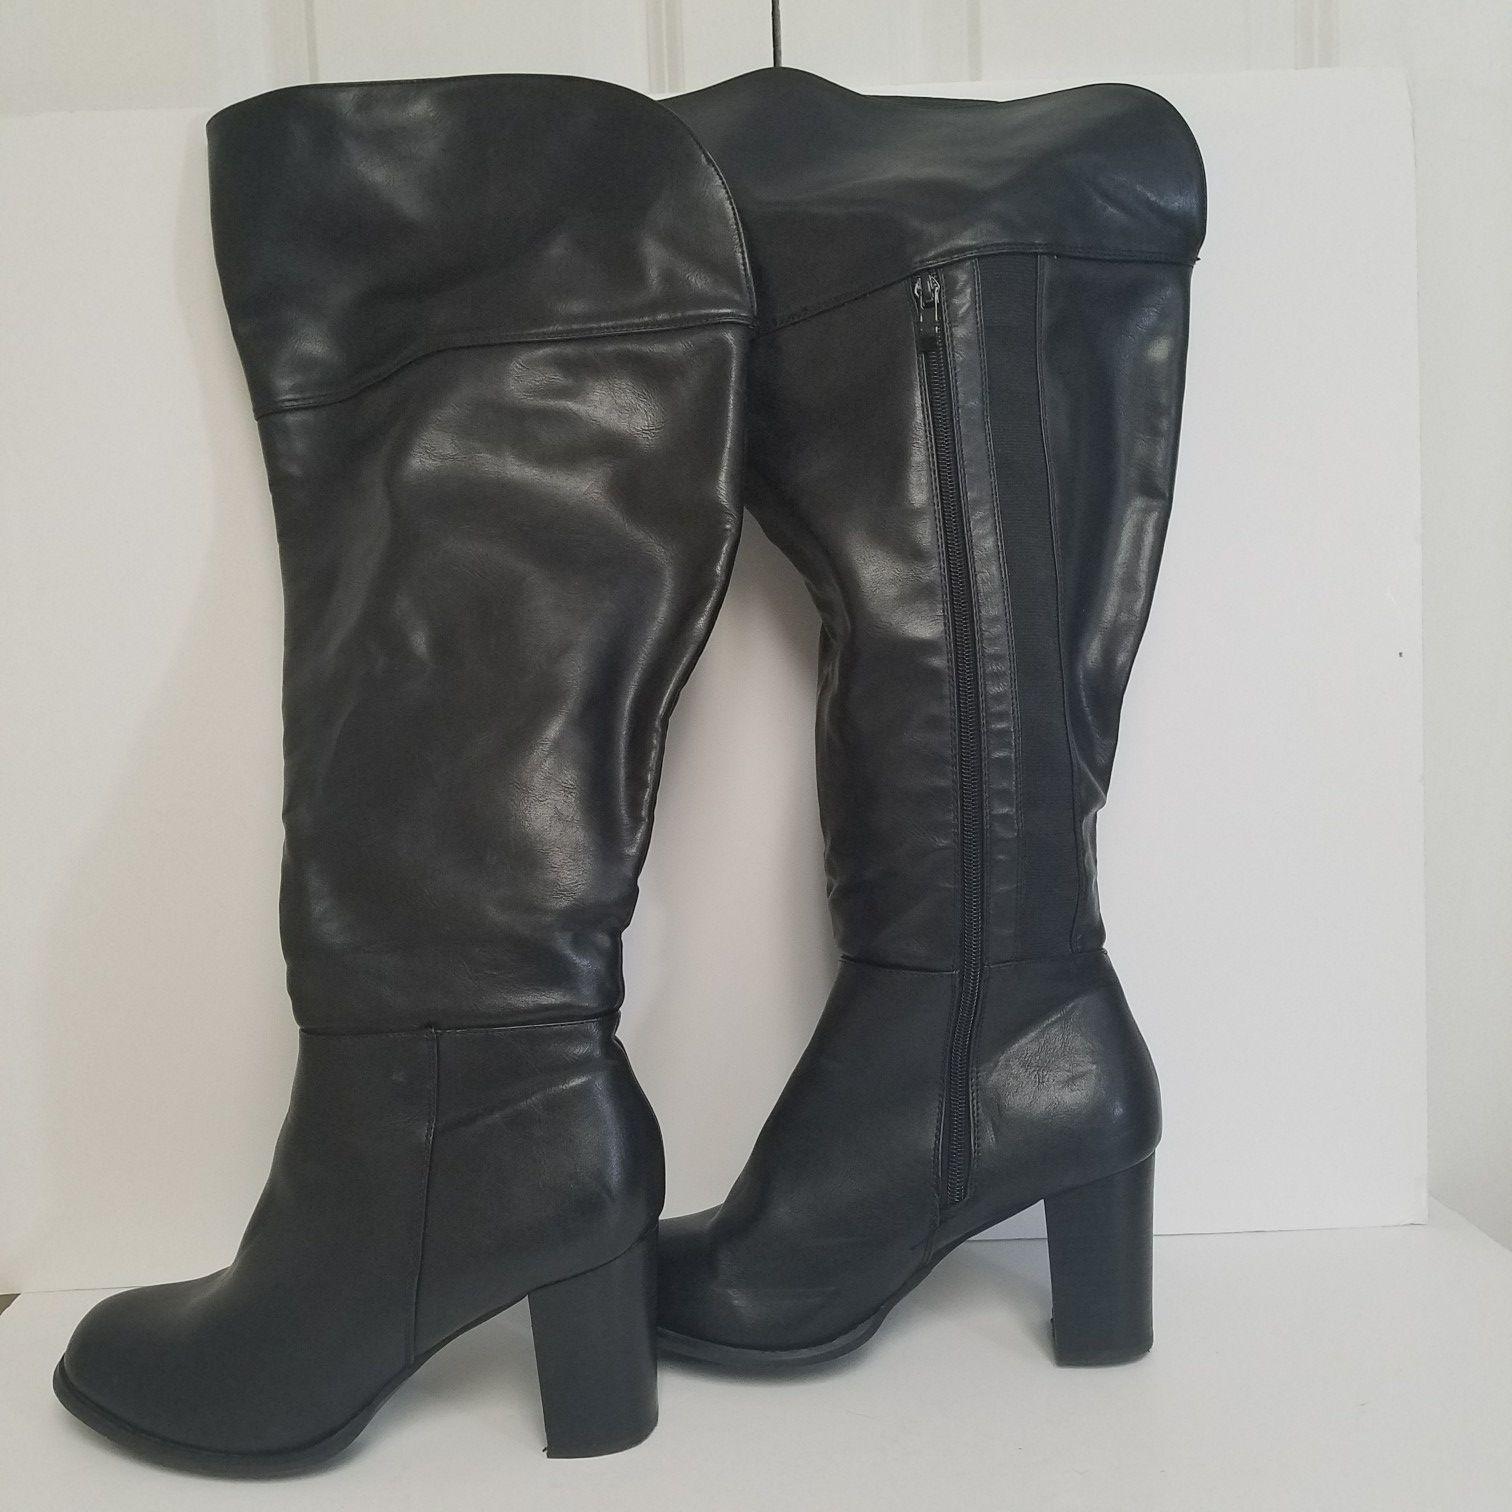 Black tall block heel boots size 9 W